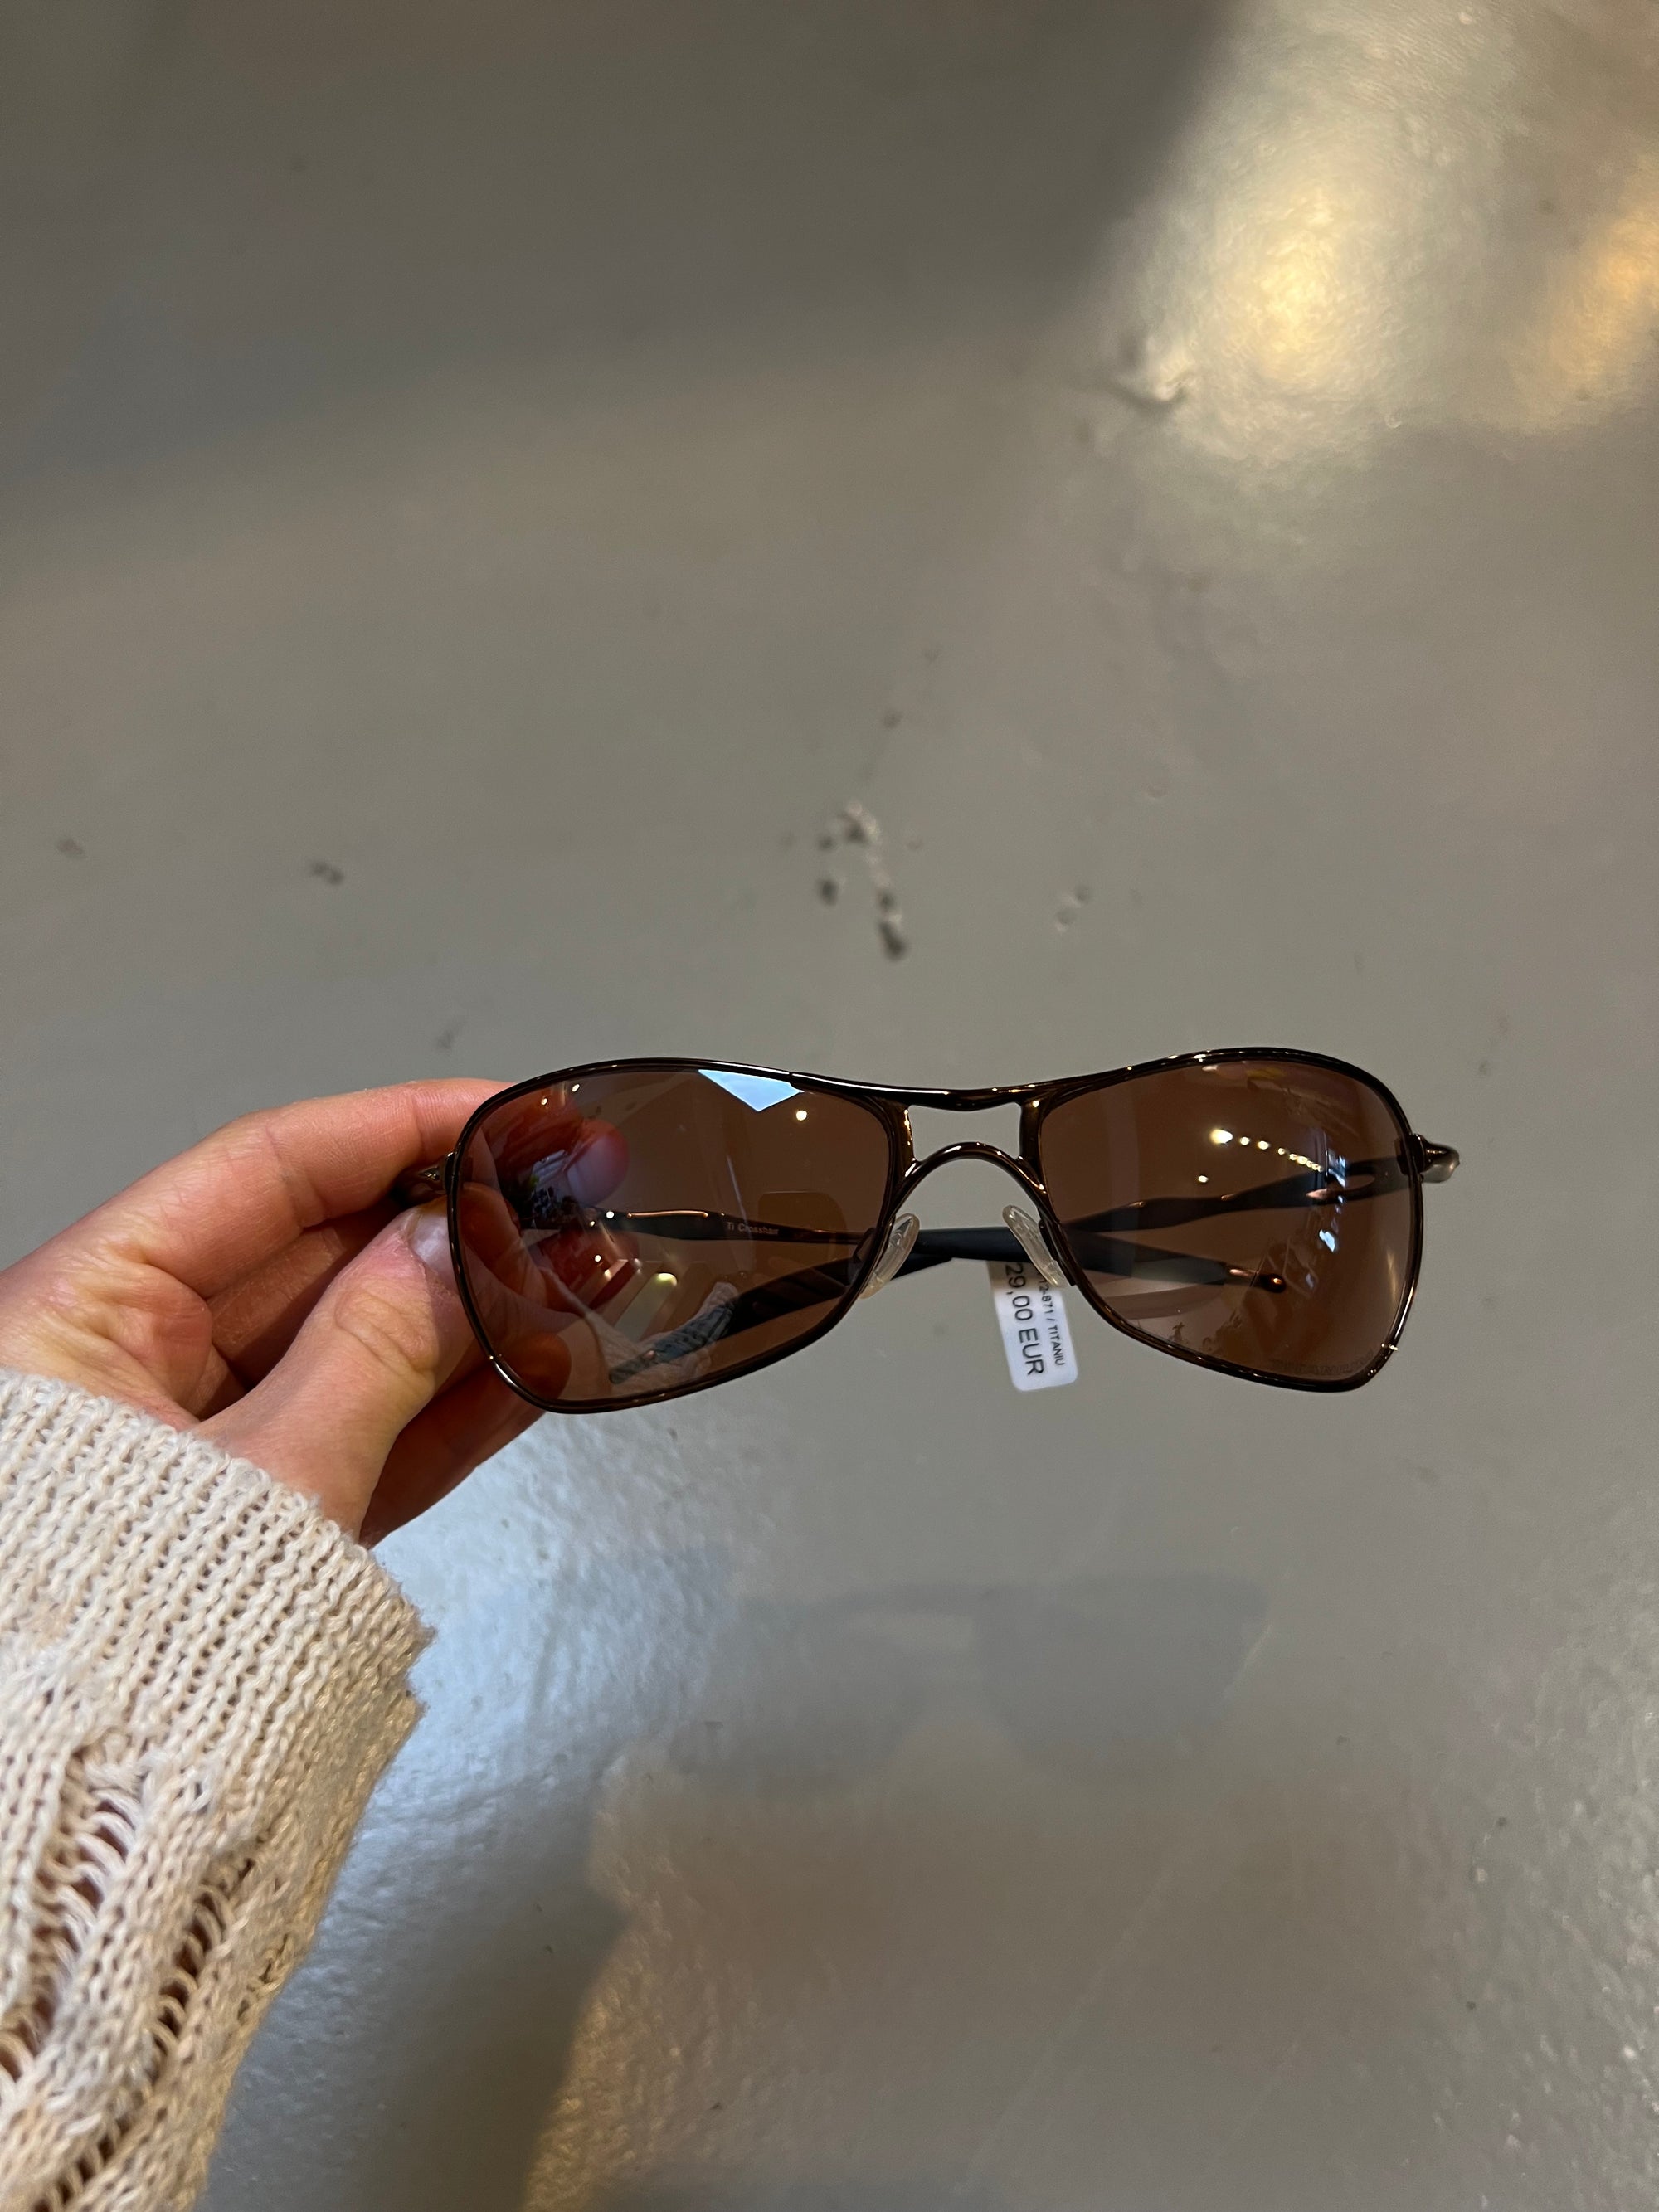 Produktbild von Oakley Titanium Sunglasses von vorne